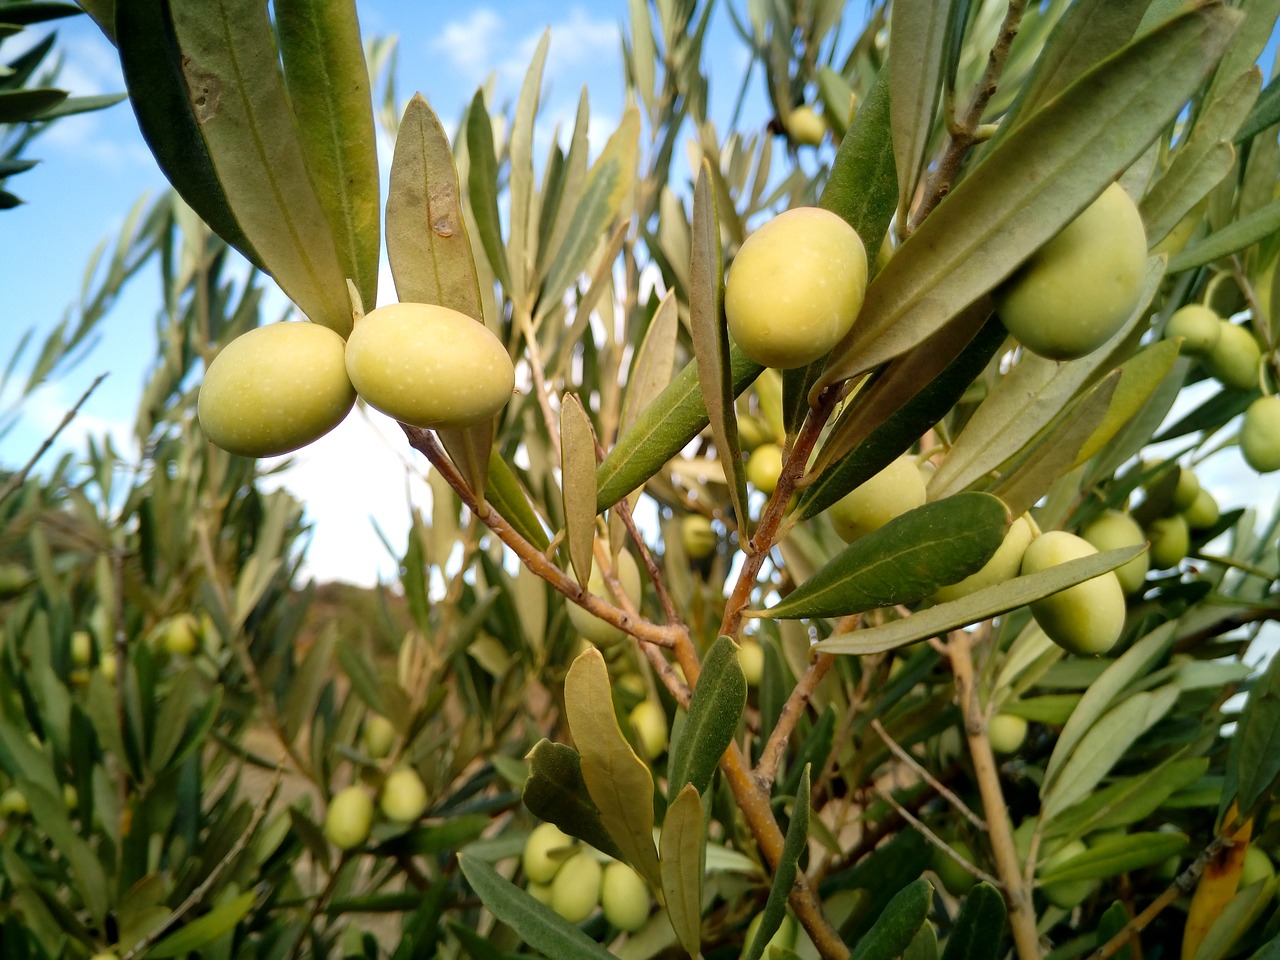 abla tierra de olivos y huertos fertiles 3